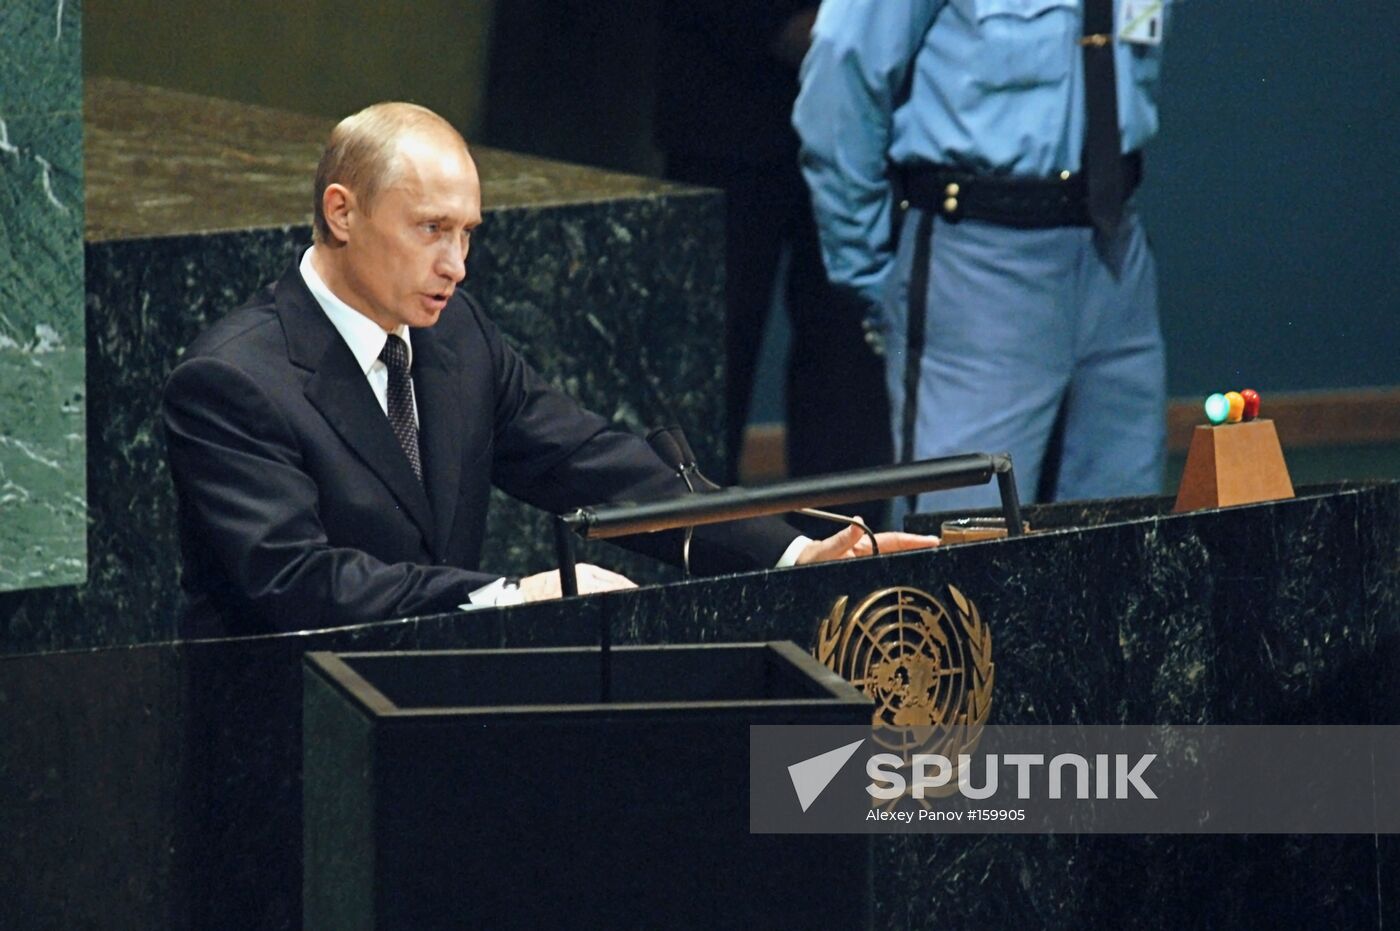 Putin Un General Assembly Speech Sputnik Mediabank 7364